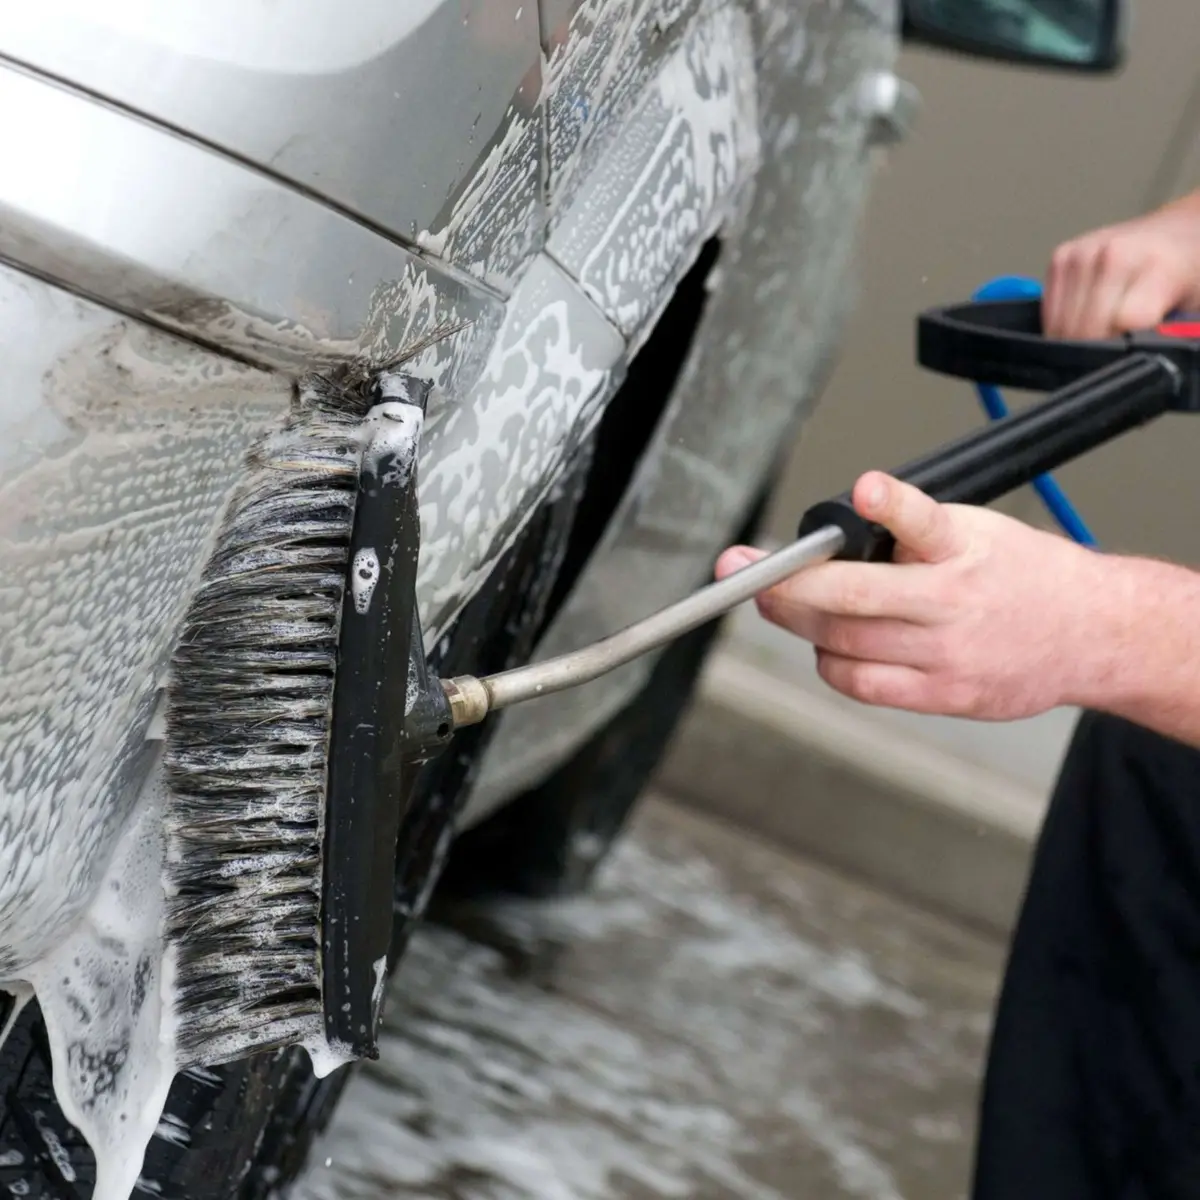 warum scheiden blattlaeuse honigtau aus auto aufto mit spuelmittel und buerste putzen